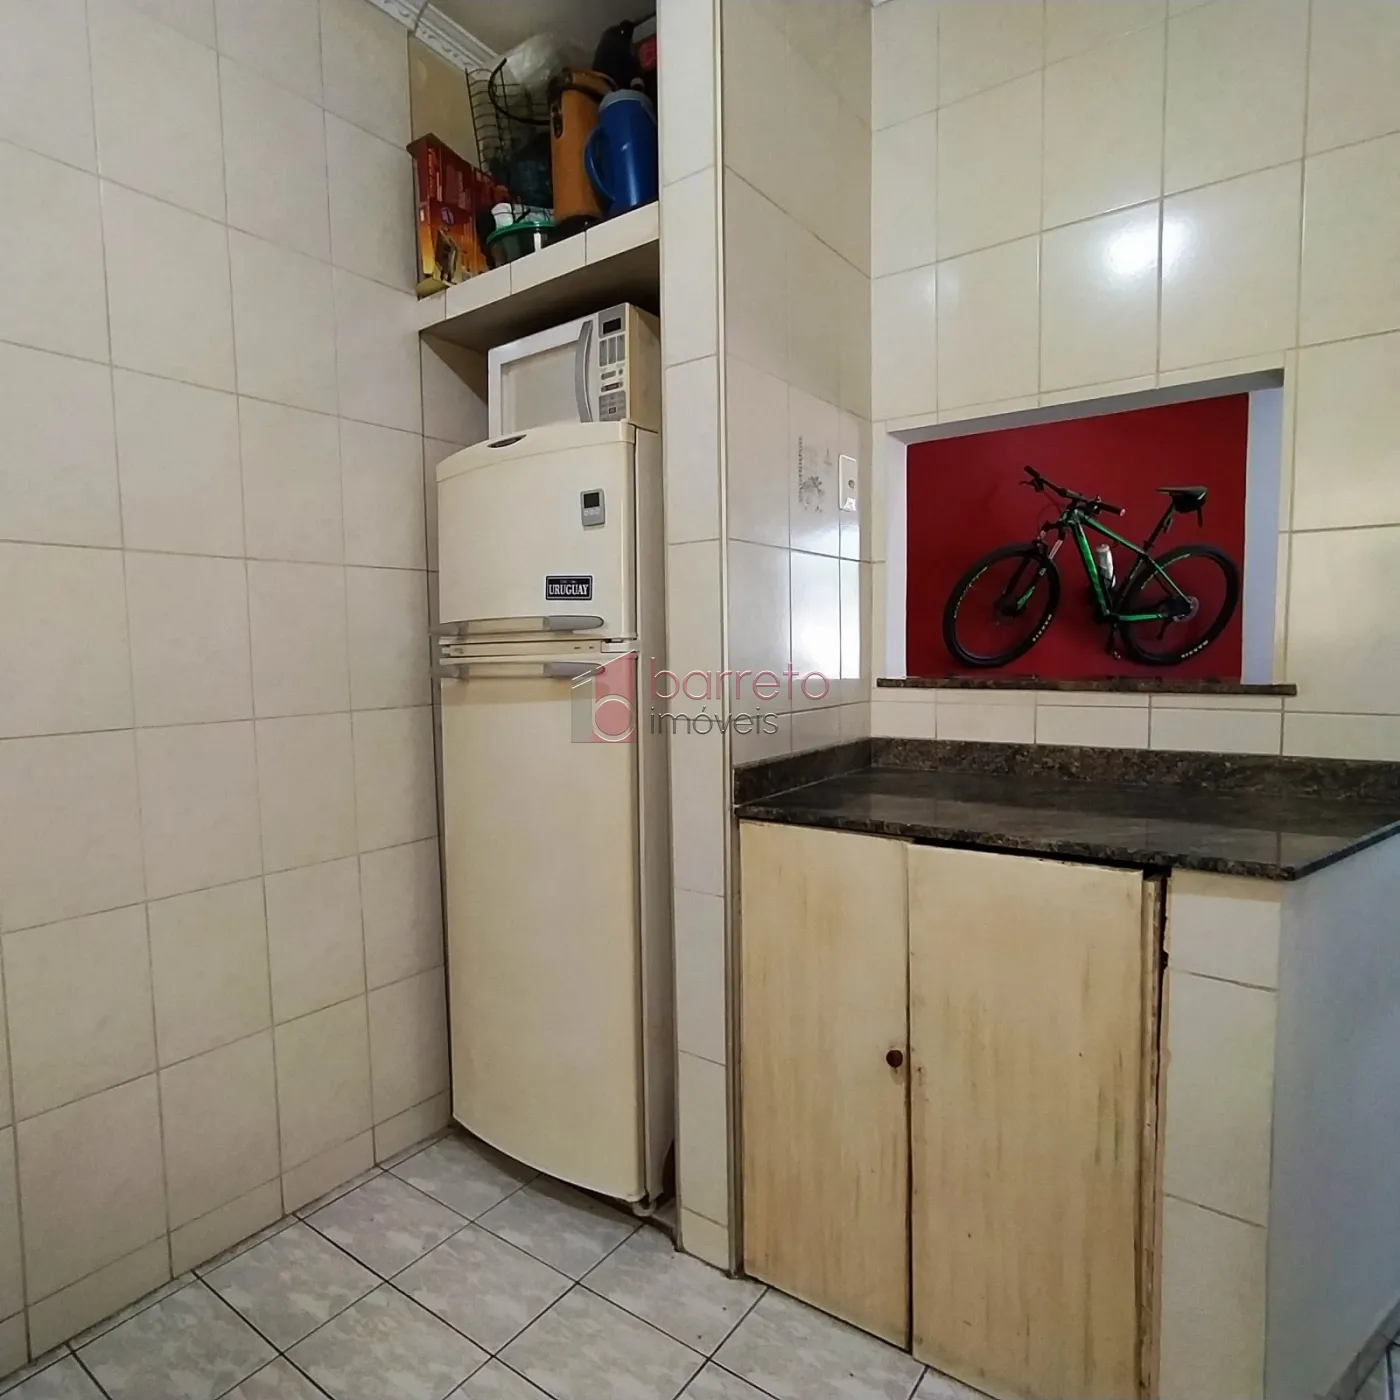 Comprar Apartamento / Padrão em Jundiaí R$ 330.000,00 - Foto 11